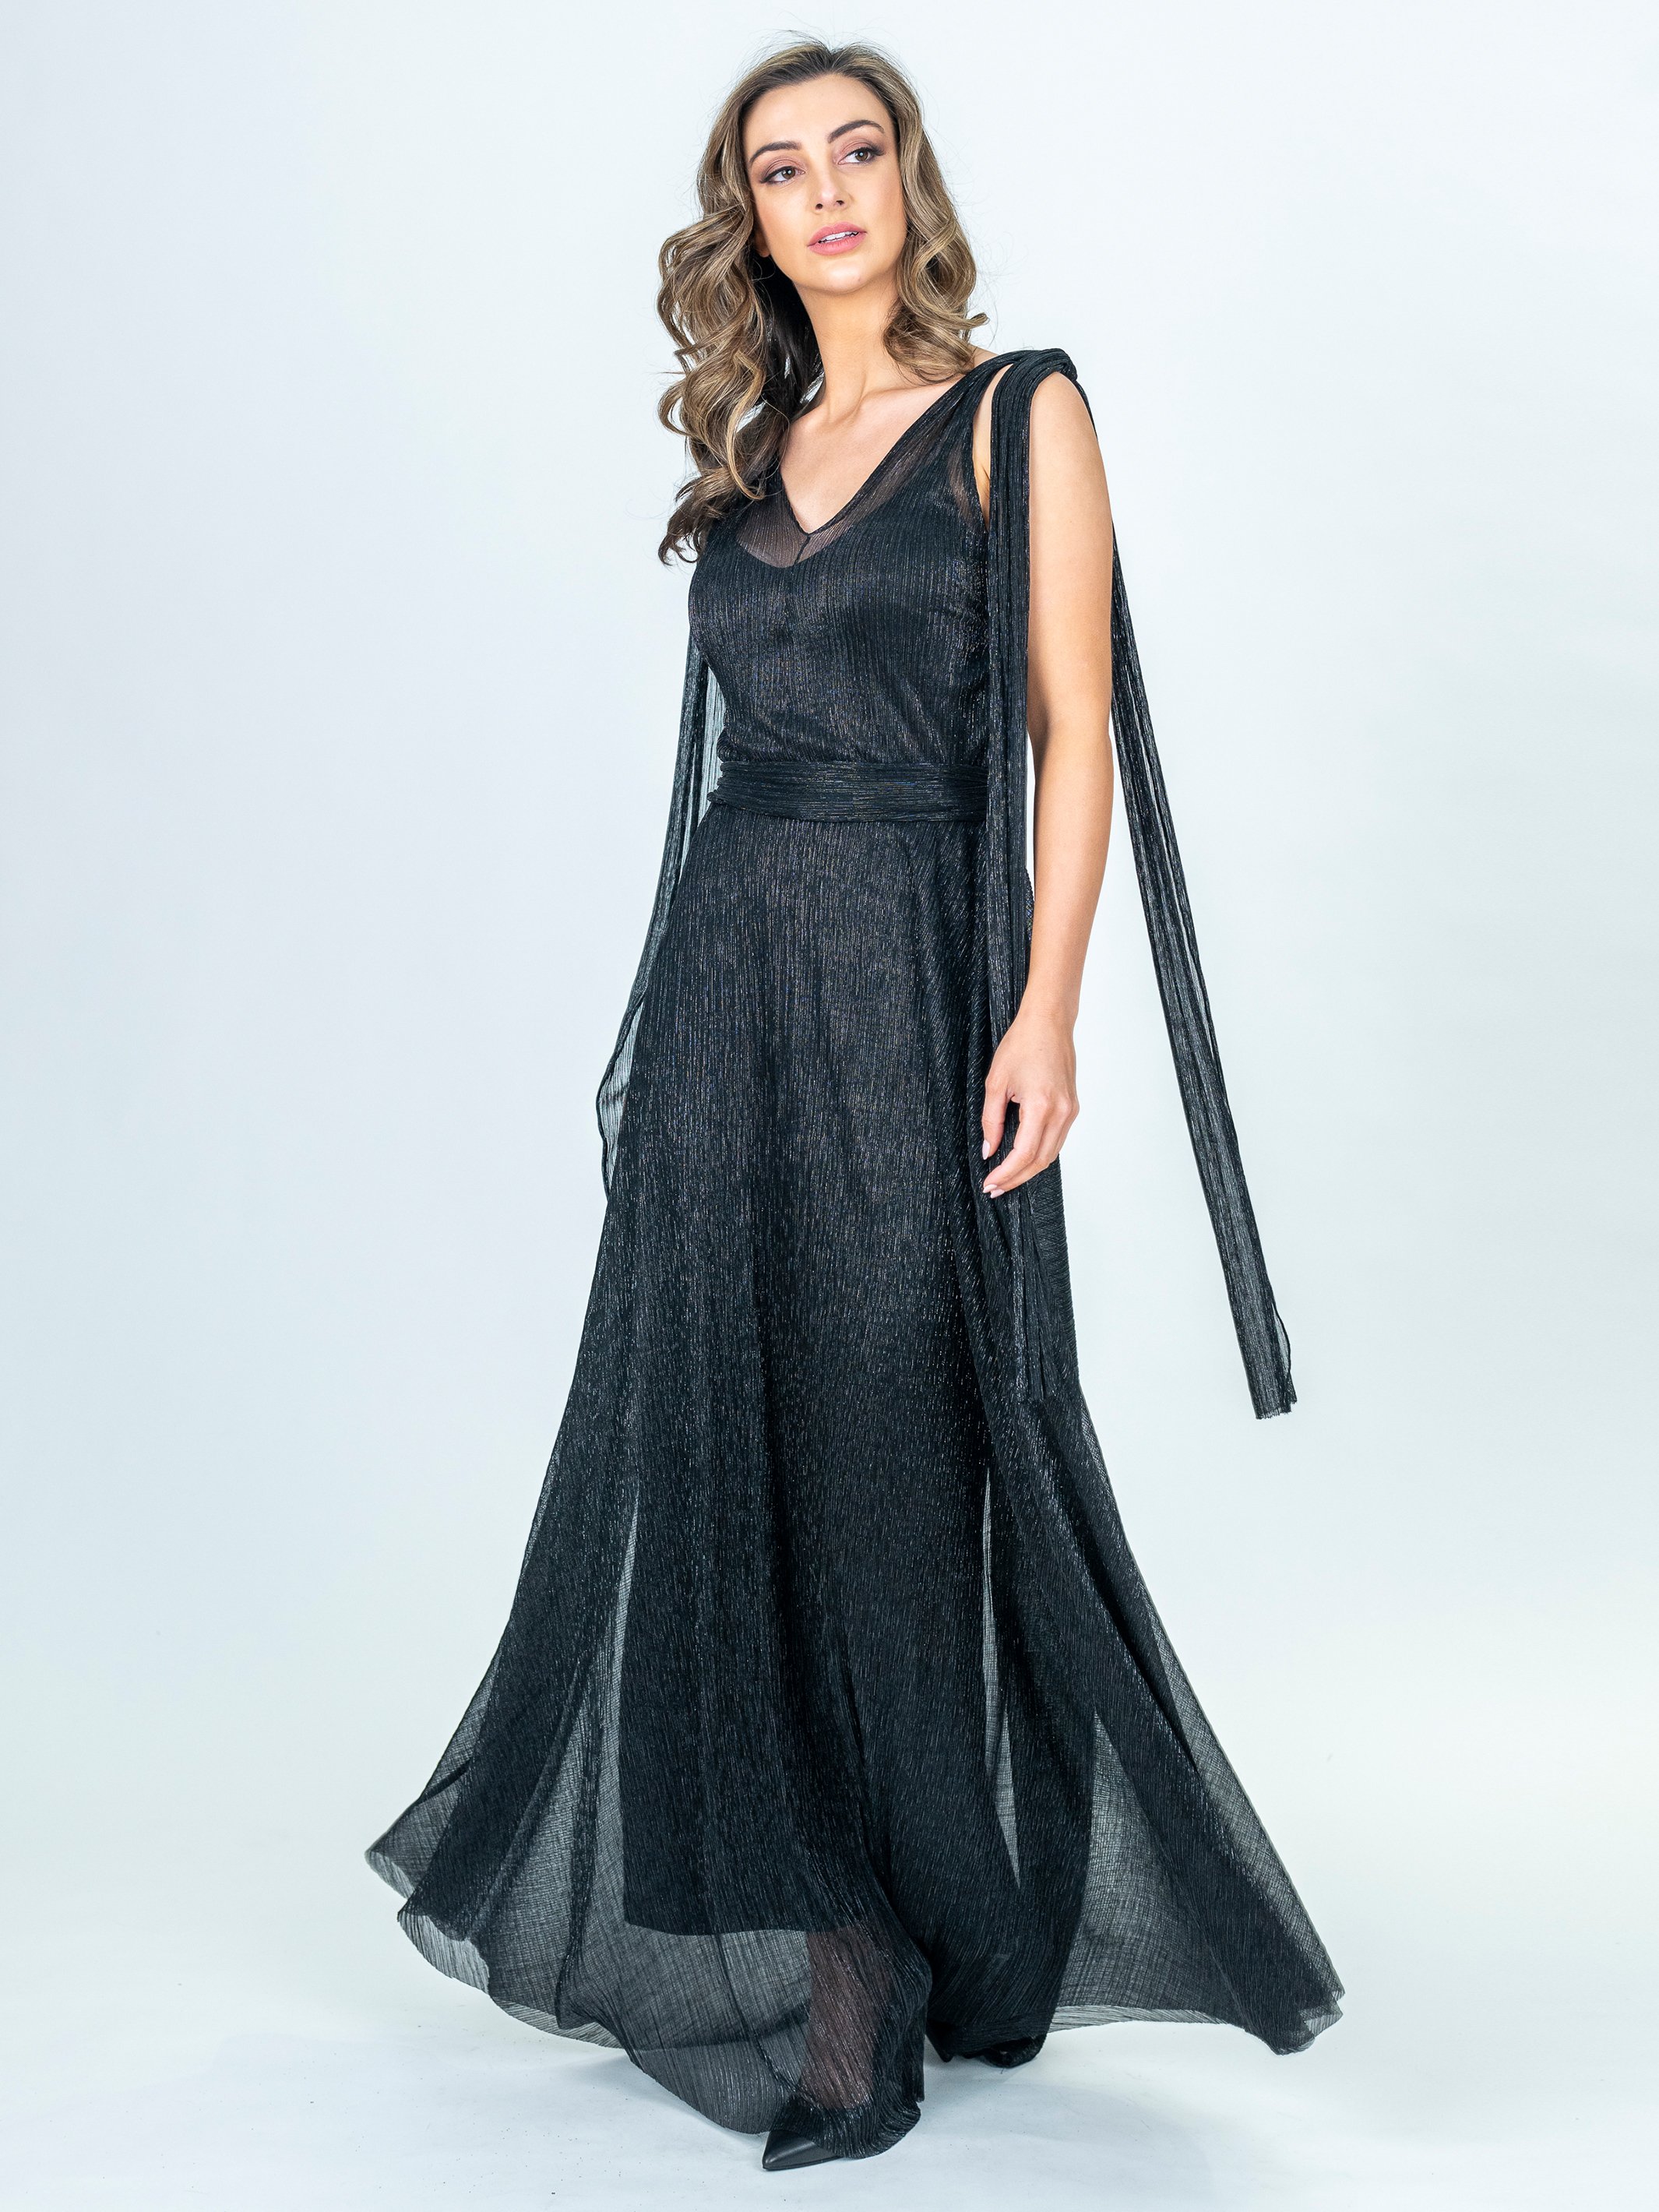 Modest Beaded Cap Sleeved Long Black Tulle Prom Dress Open Back - $124.9776  #AM79130 - SheProm.com